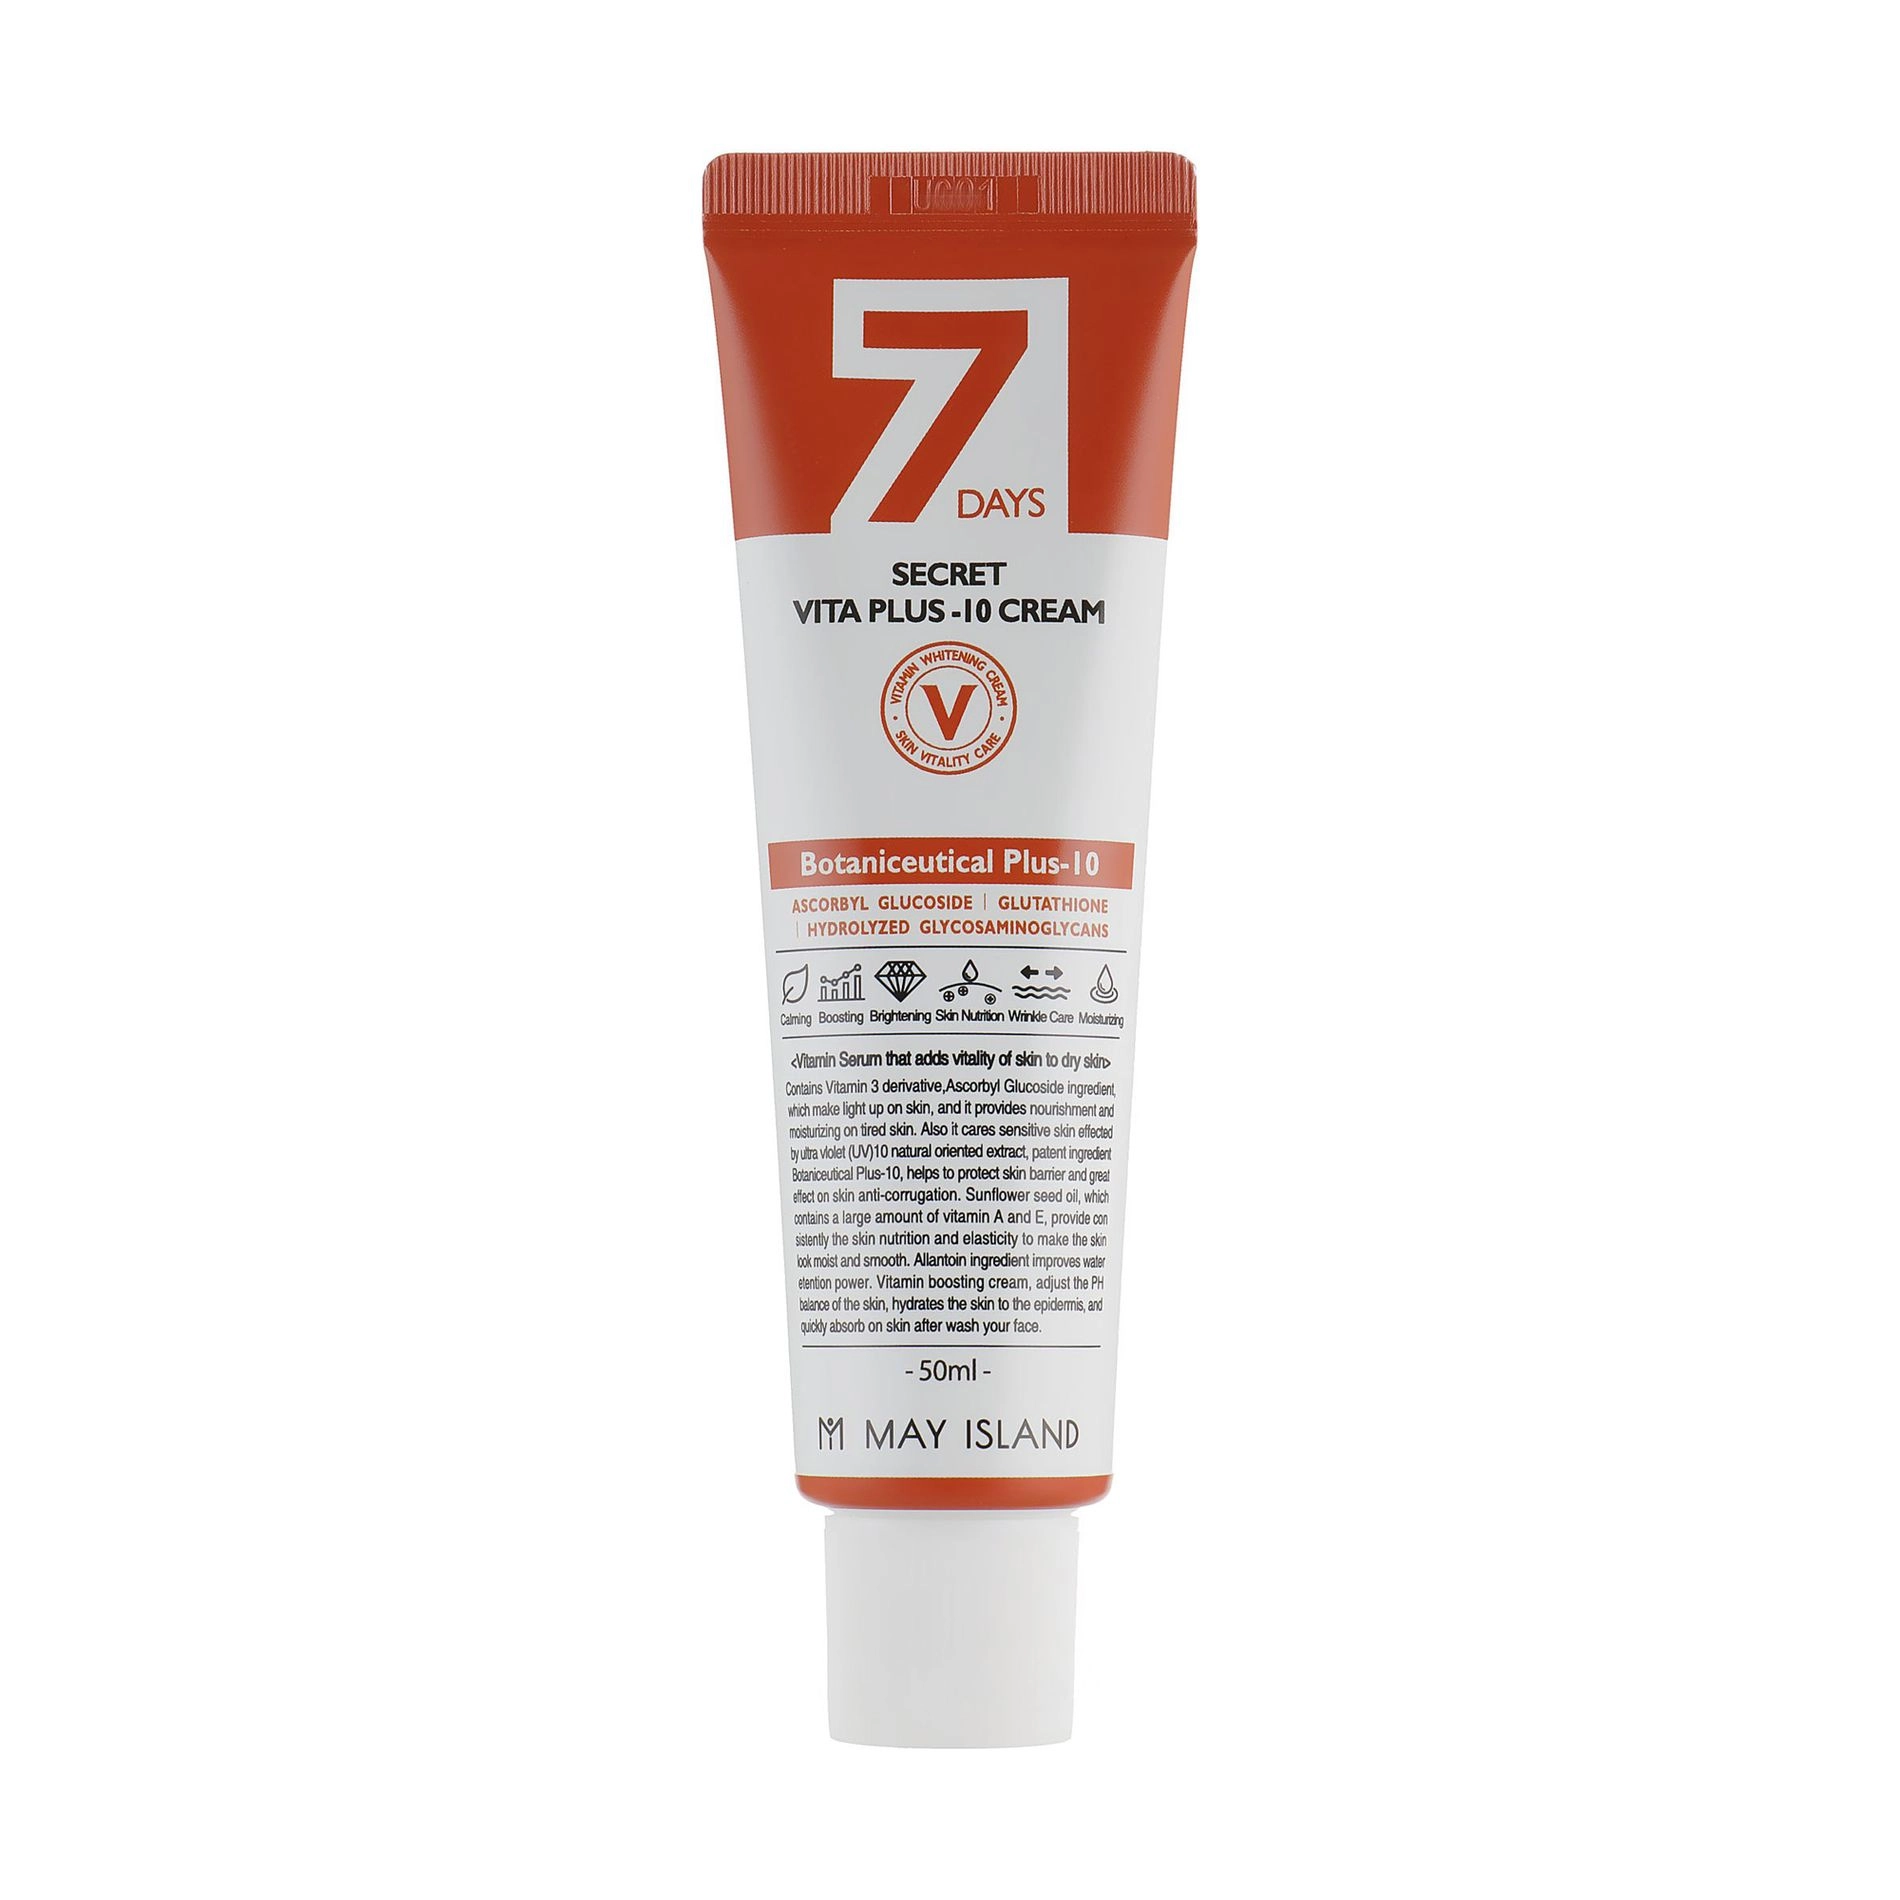 Витаминизированный крем для лица для осветления и выравнивания тона кожи - May Island 7 Days Secret Vita Plus-10 Cream, 50 мл - фото N1